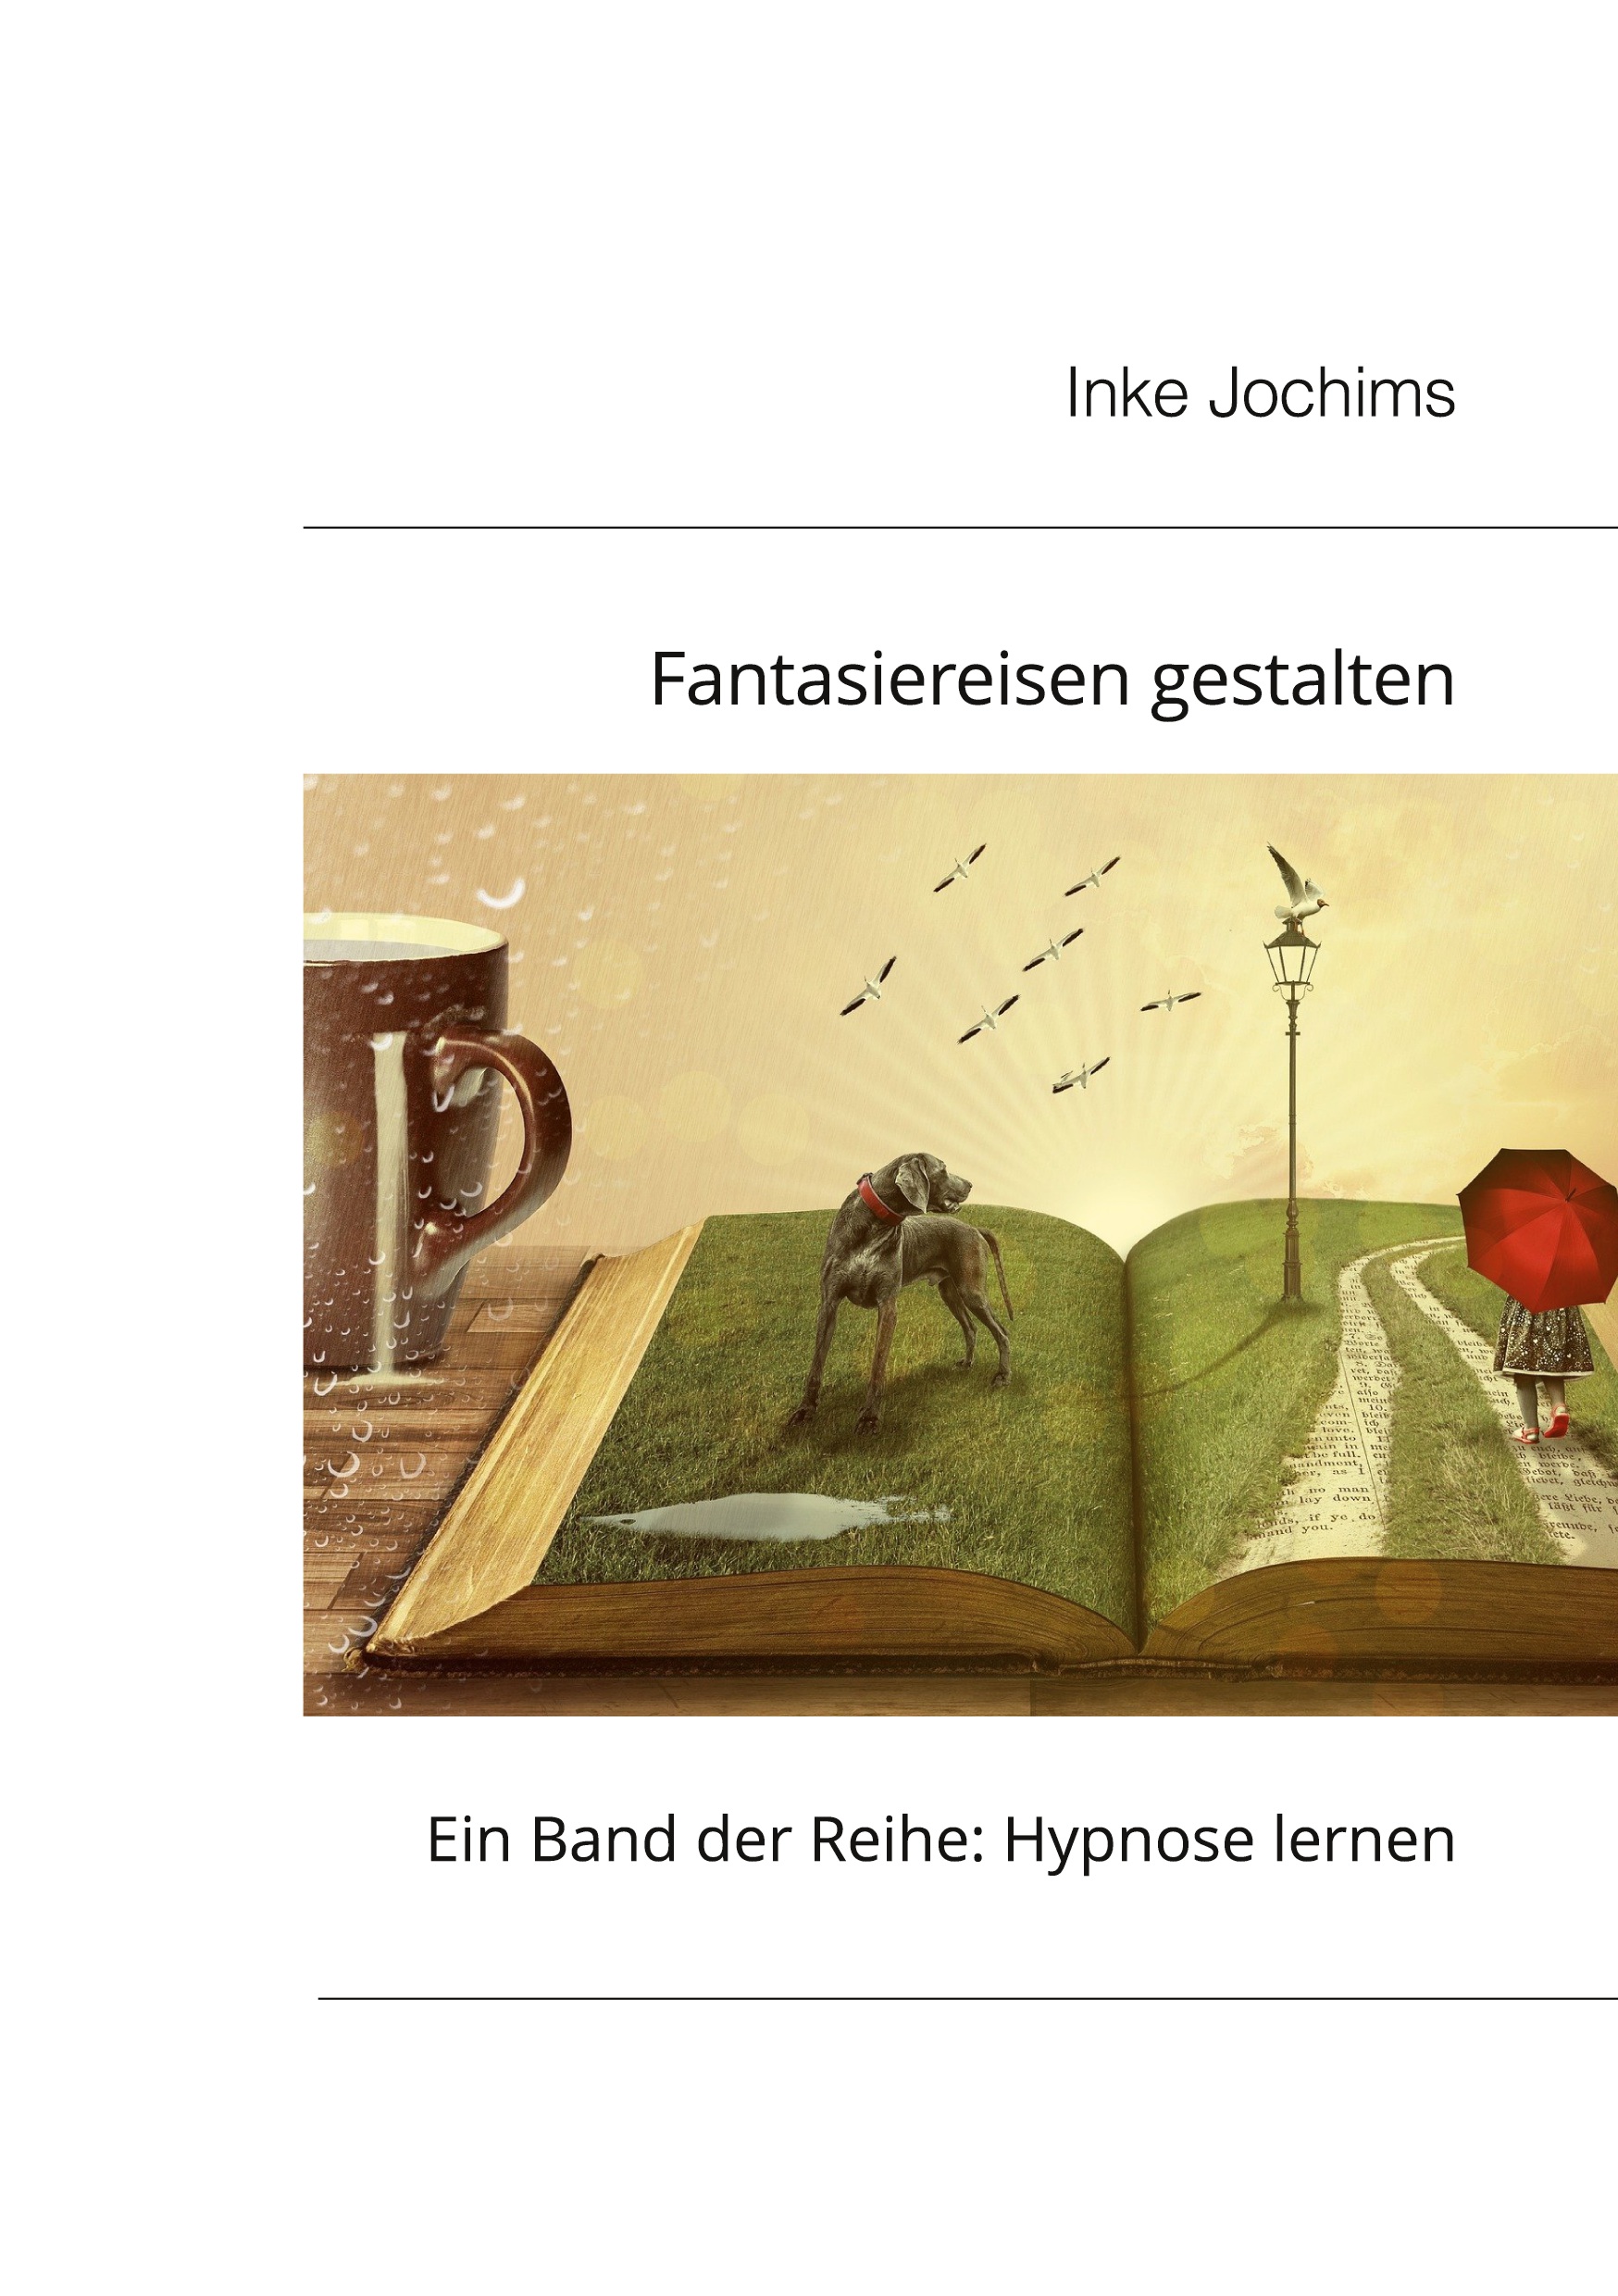 Buch von Inke Jochims